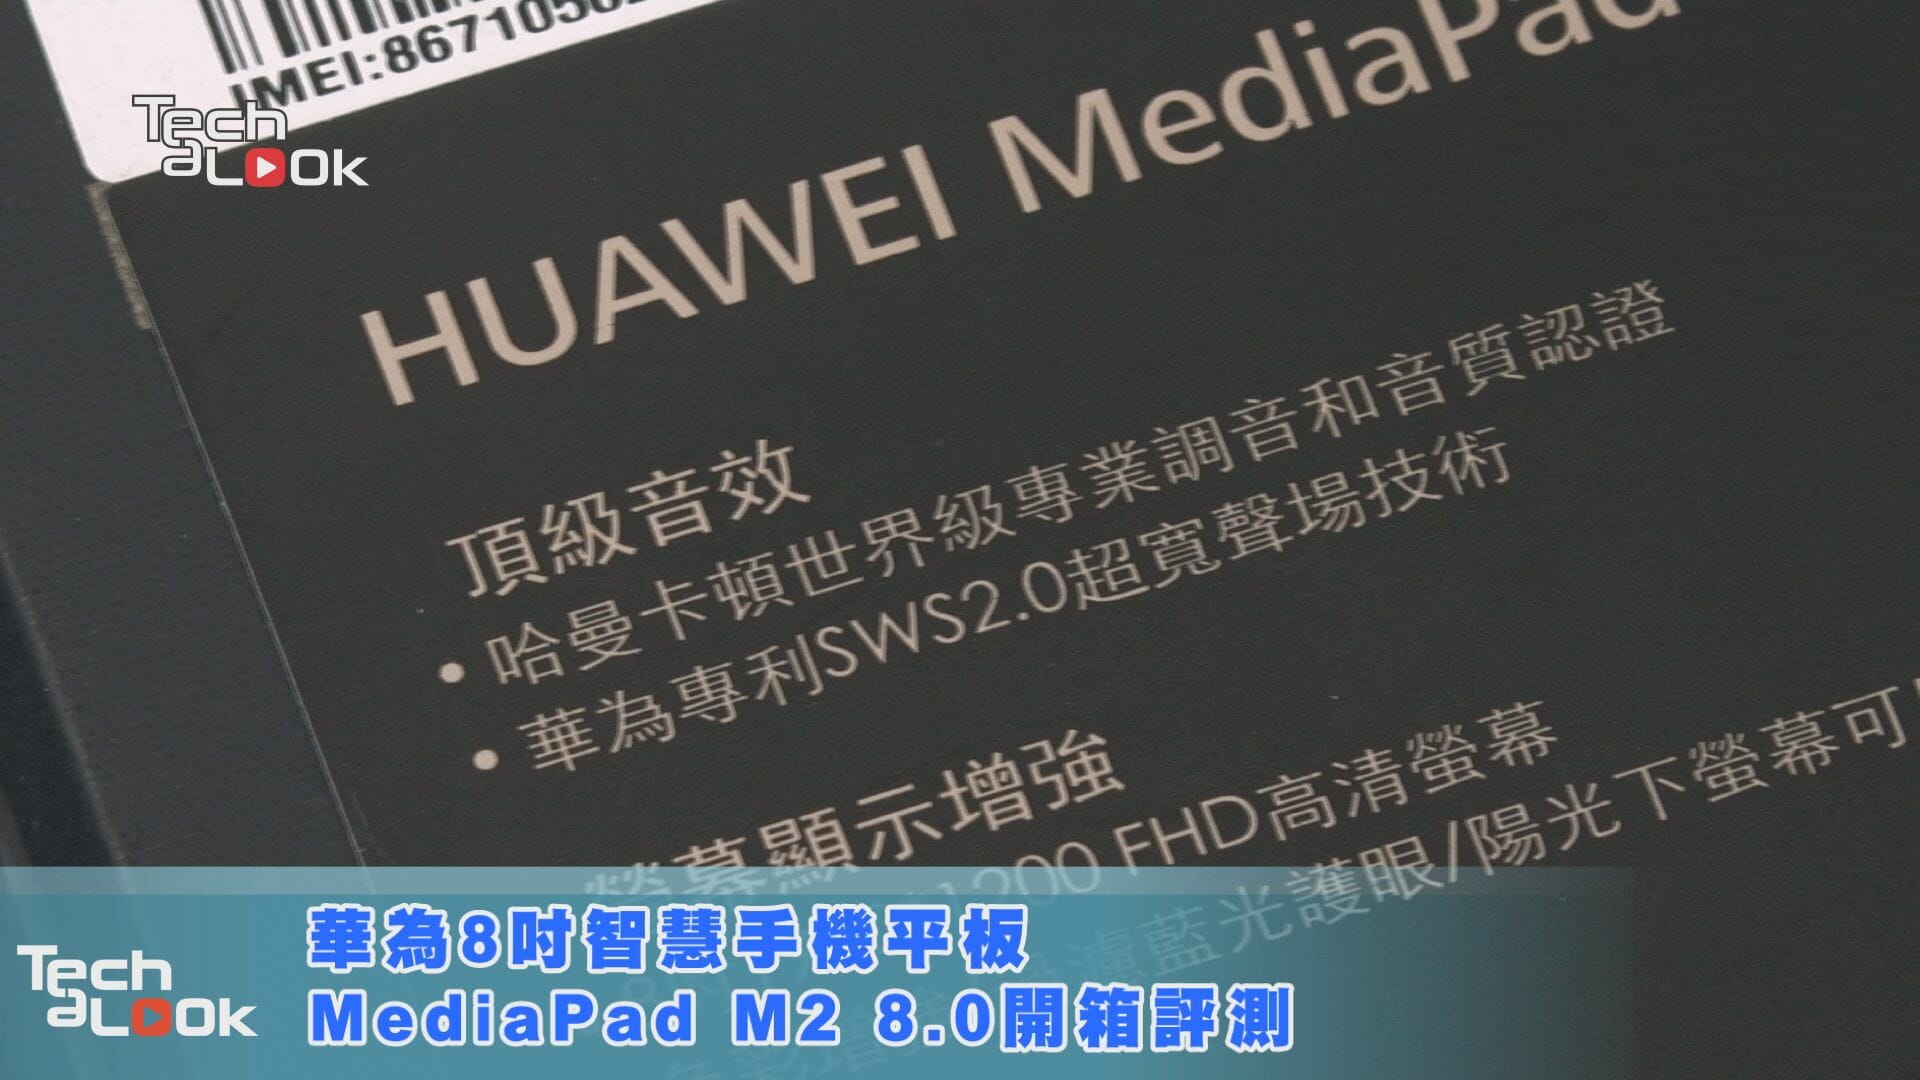 Gwen Kimmelman: Huawei MediaPad M2 8.0 Review 華為8吋智慧手機平板MediaPad M2 8 0開箱評測